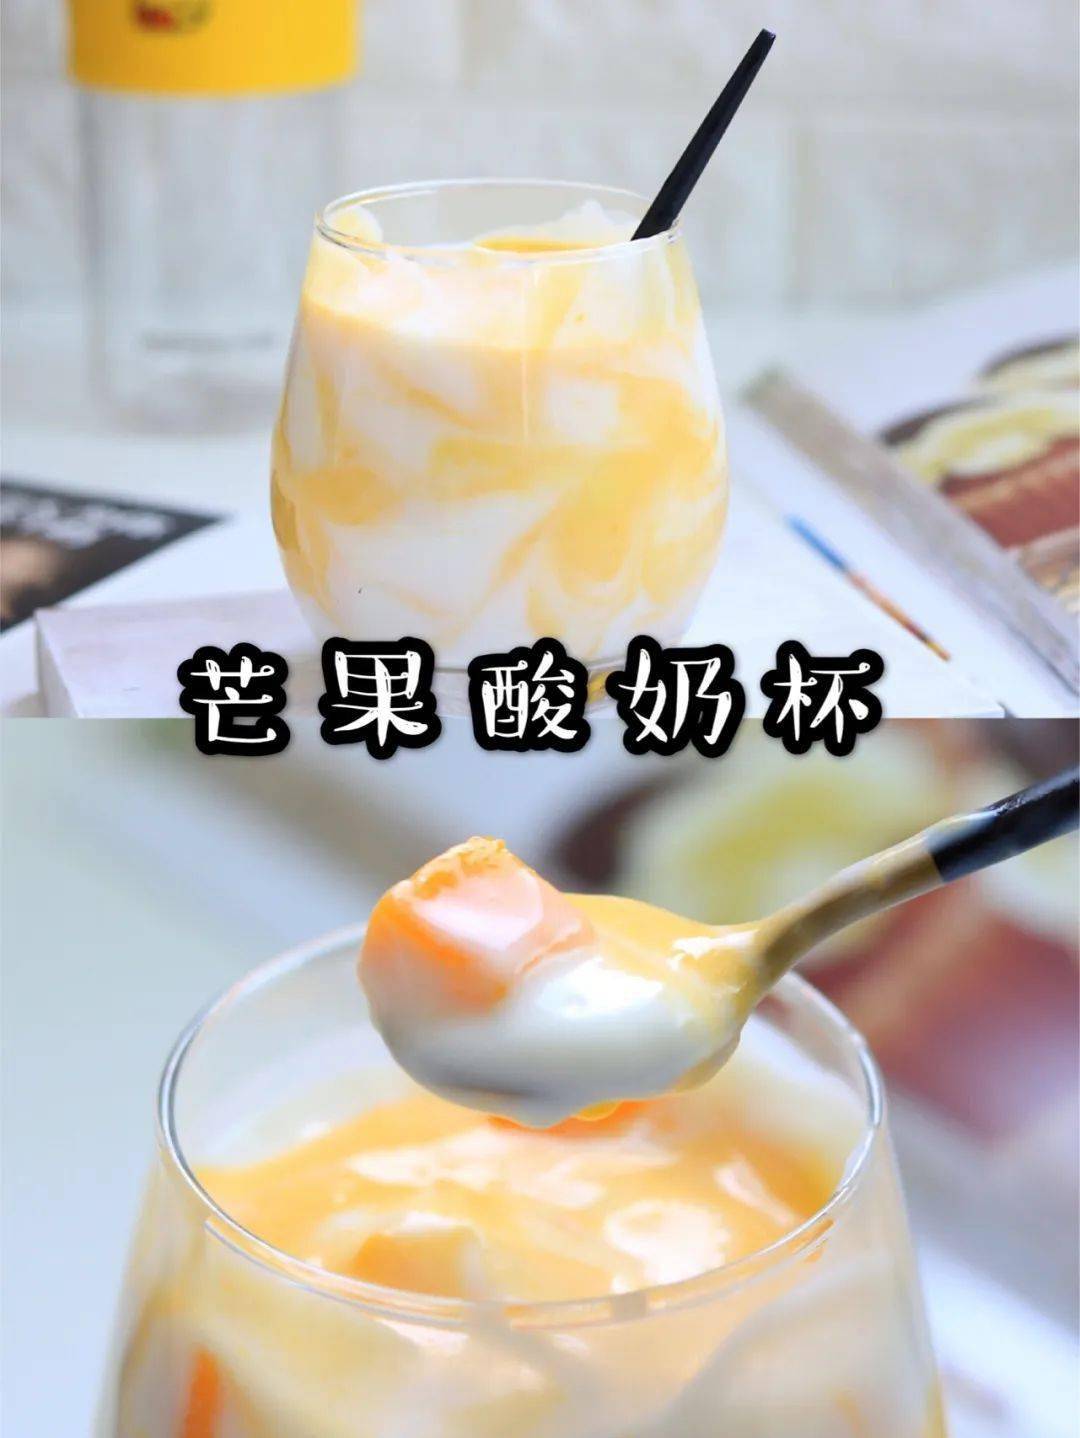 自制夏季饮品,芒果酸奶!好吃到转圈圈